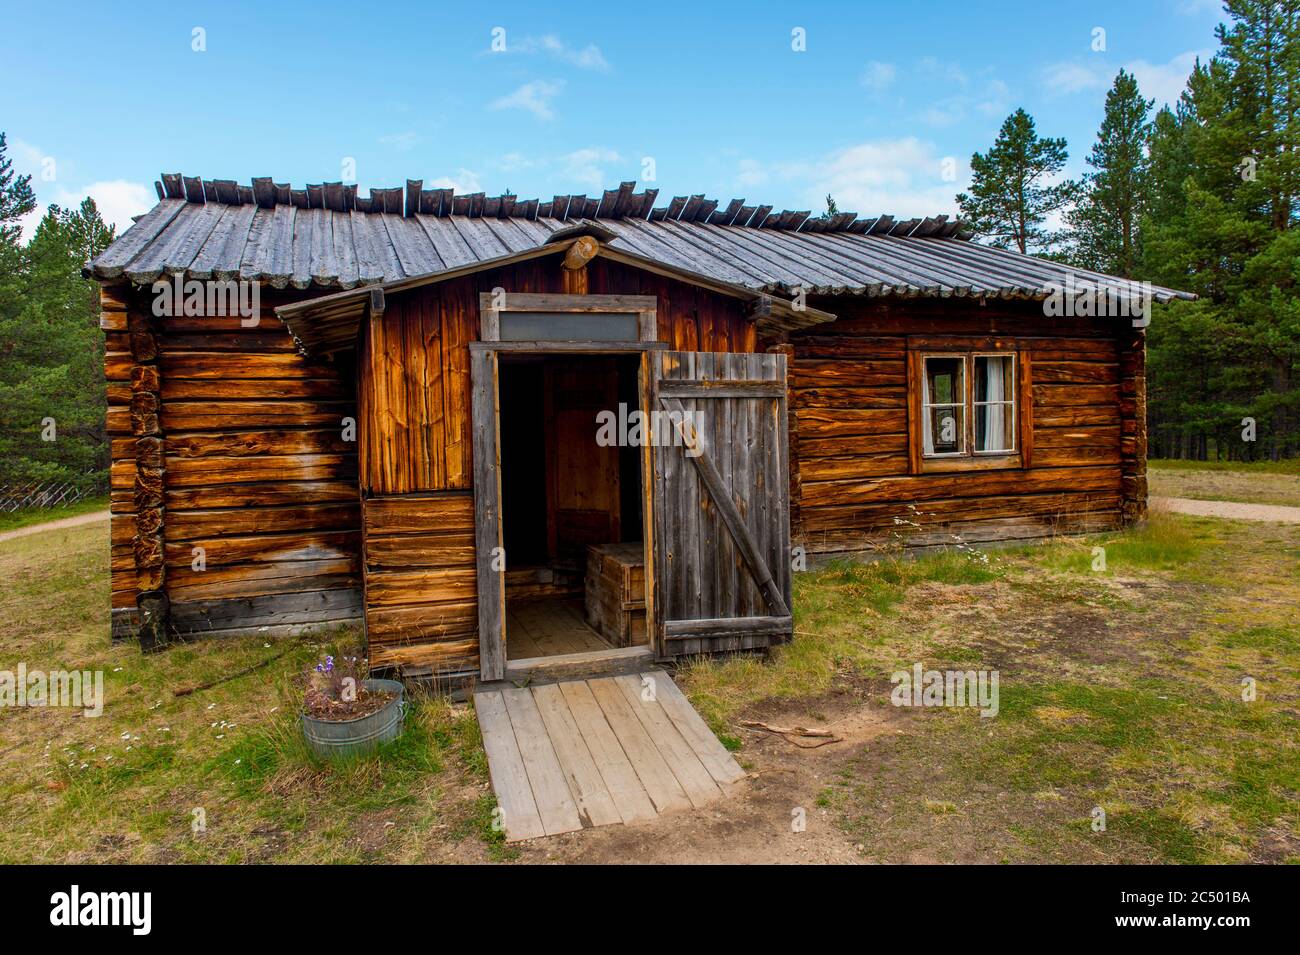 Sami Blockhaus im Freilichtbereich des Siida Museums in Inari, das das Nationalmuseum des samischen Volkes in Lappland, Nordfinnland, ist. Stockfoto